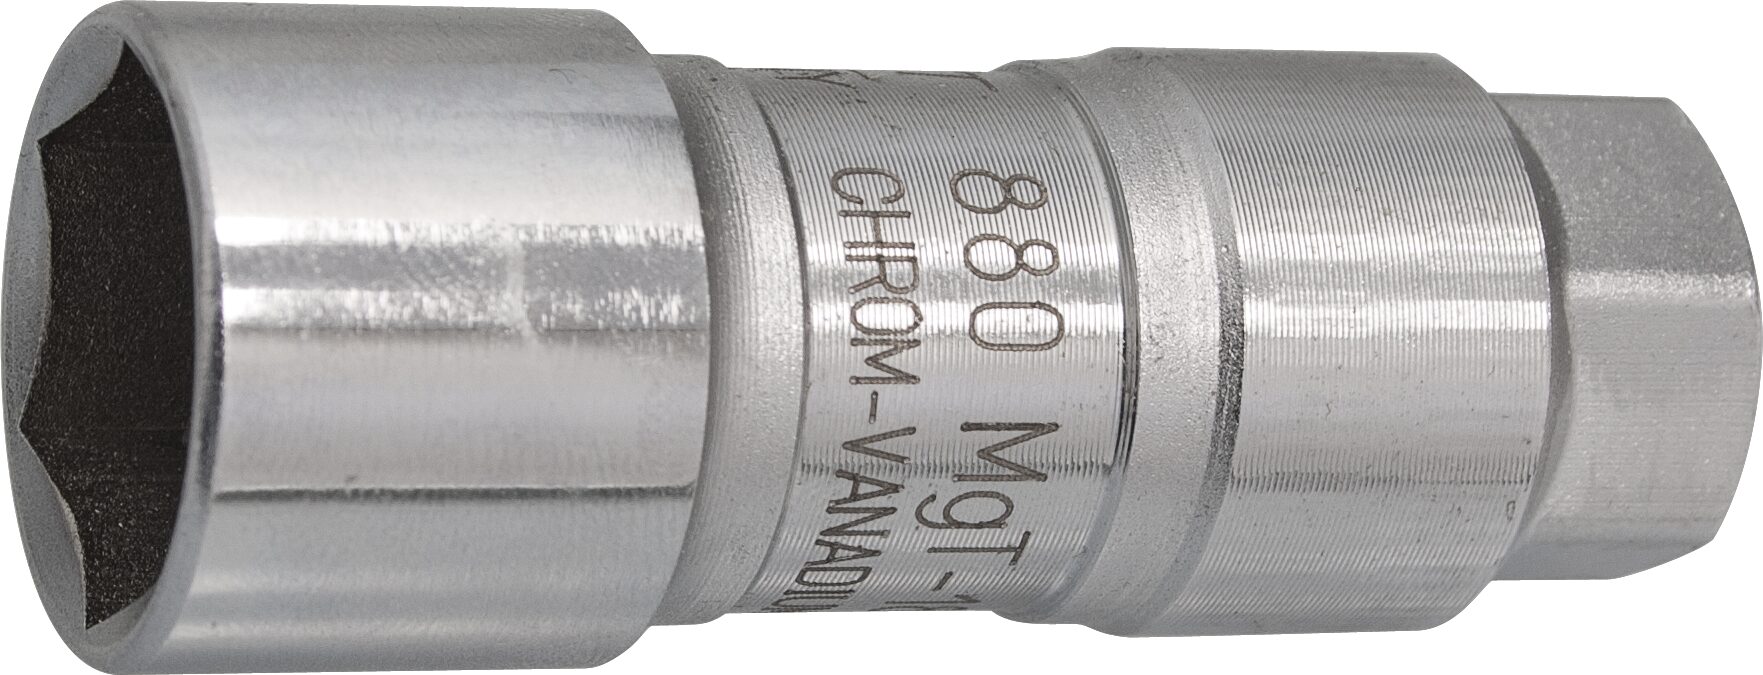 HAZET Zündkerzen Steckschlüsseleinsatz 880MGT-18 · Vierkant hohl 10 mm (3/8 Zoll) · Außen Sechskant Profil · 18 mm